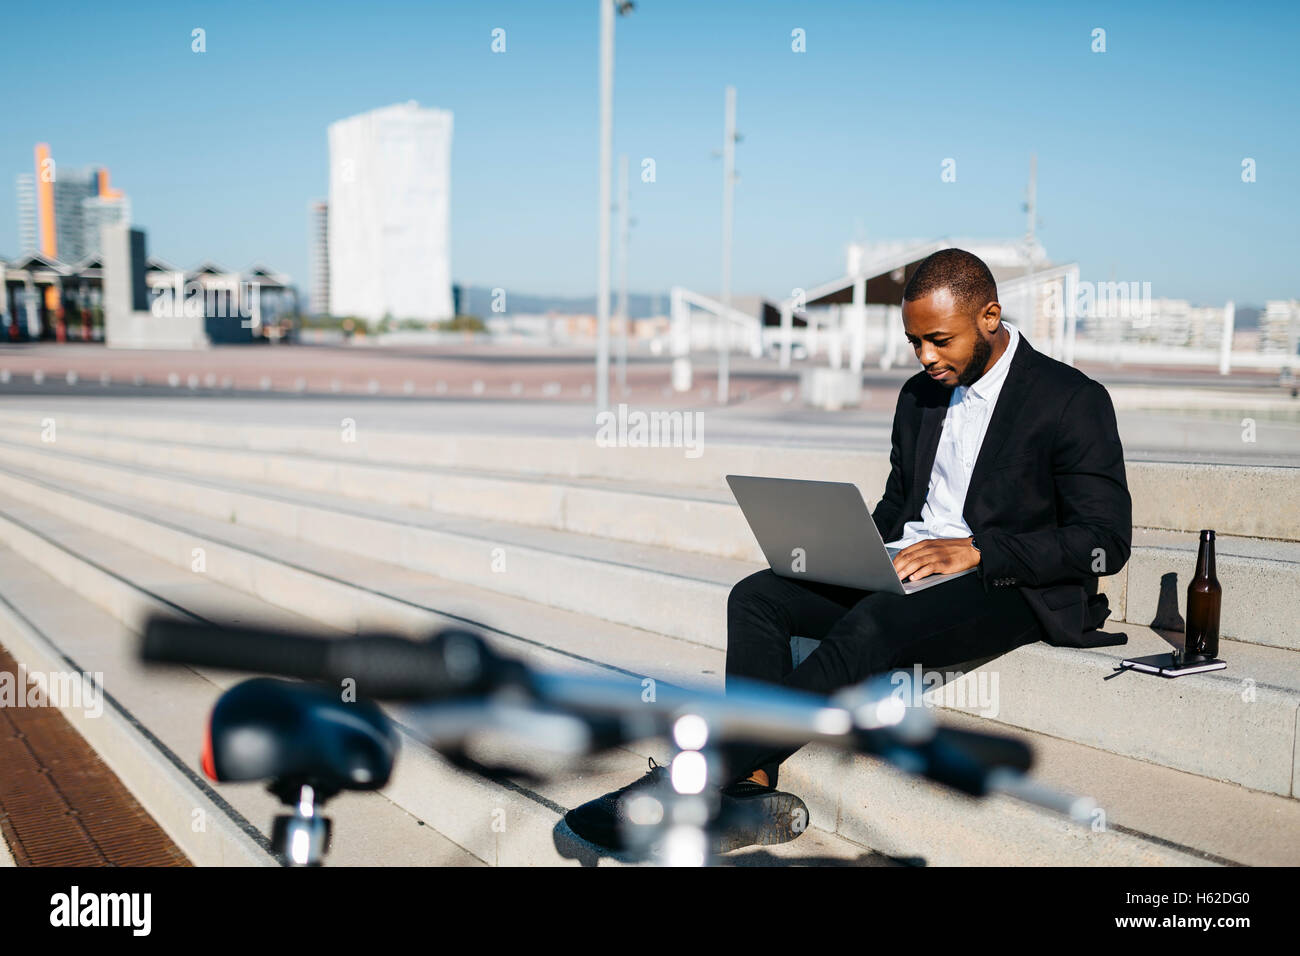 Businessman sitting on stairs avec bouteille de bière using laptop Banque D'Images